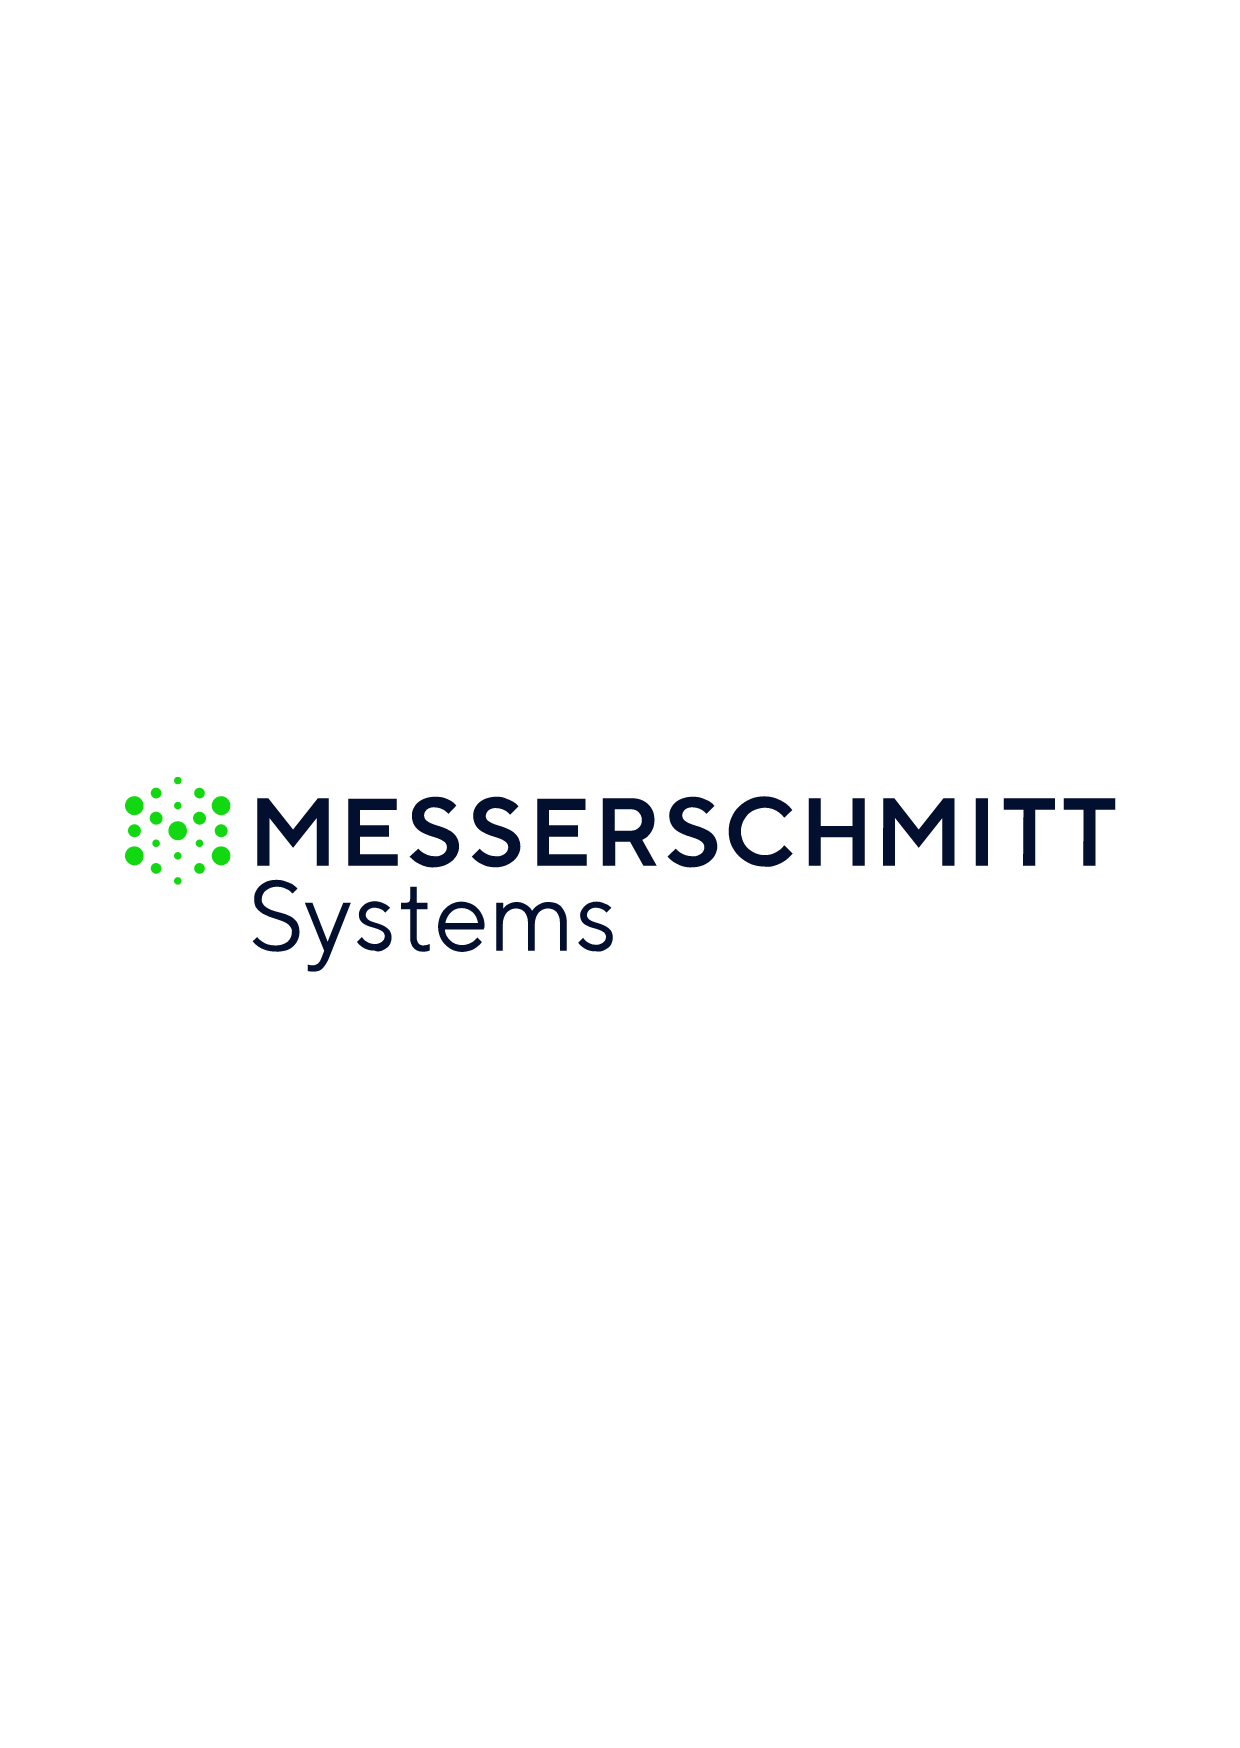 messerschmitt